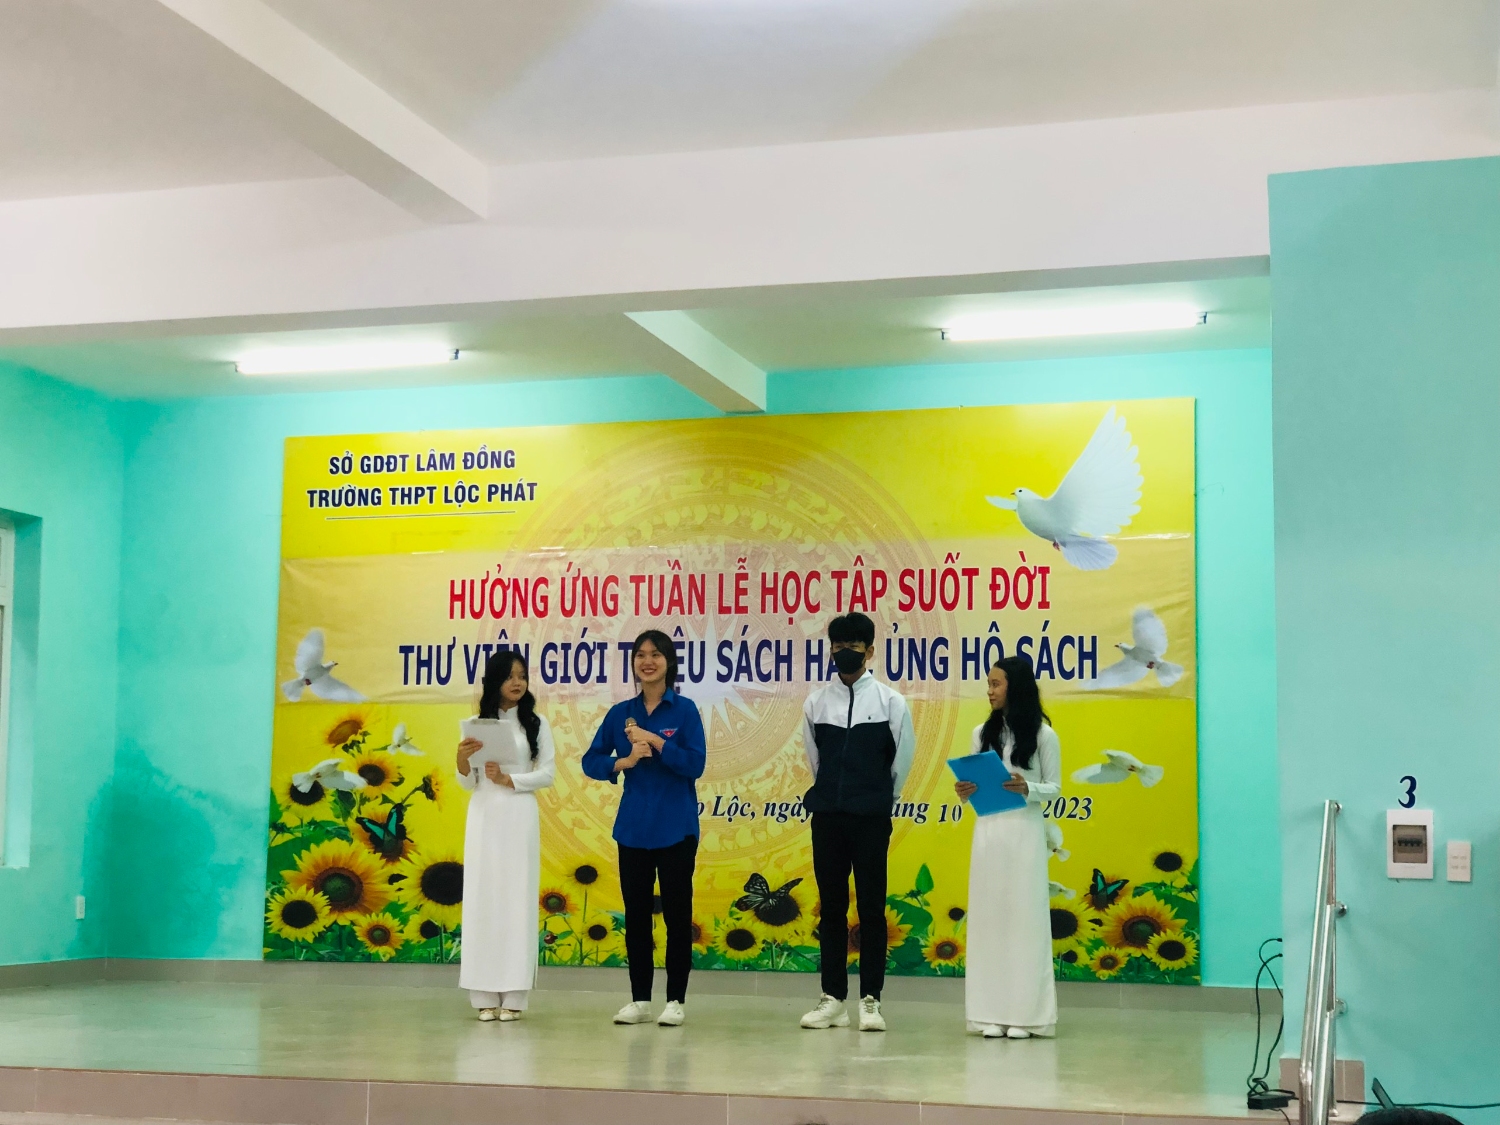 Trường THPT Lộc Phát tổ chức sinh hoạt dưới cờ - Hưởng ứng tuần lế học tập suốt đời với nội dung giới thiệu sách hay và vận động quyên góp, ủng hộ sách cho Thư viện